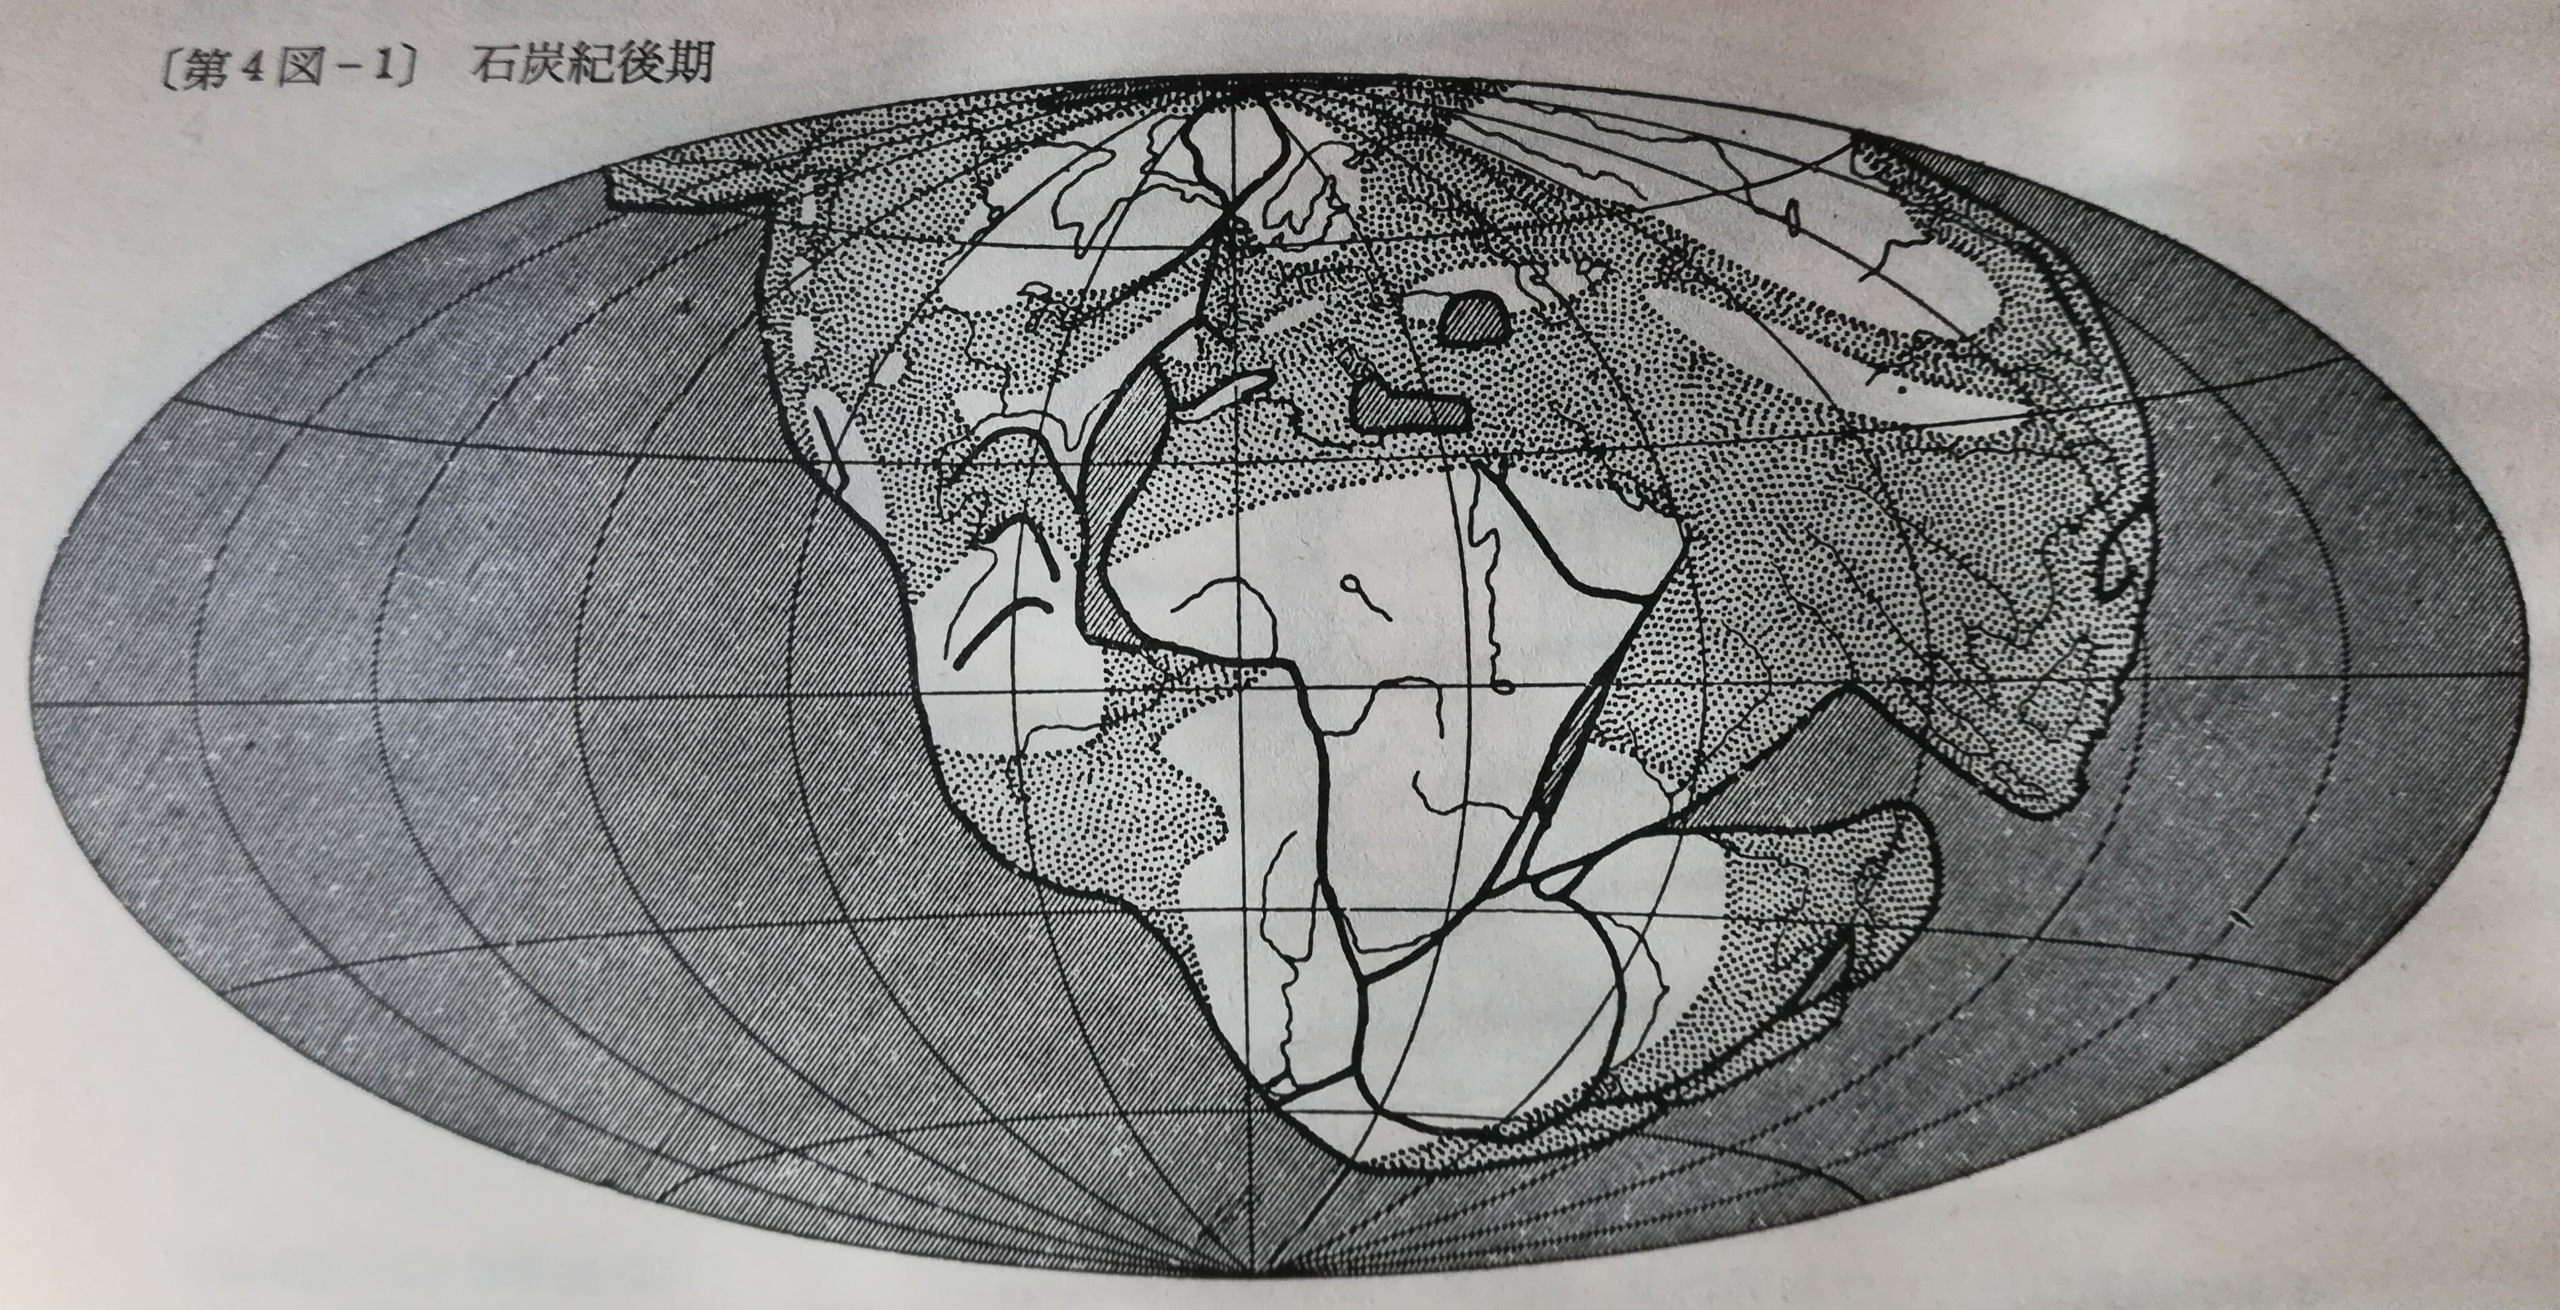 アルフレート・ヴェーゲナー著『大陸と海洋の起源』より。石炭紀後期の地球を描いた図です。 南北アメリカ大陸、アフリカ大陸、南極大陸、オーストラリア、ユーラシア大陸（ヨーロッパとアジア全域）が 地続きだった様子が描かれています。 矢嶋ストーリーのブログ「矢嶋ストーリー's news」の「大陸移動説　驚きの連続」の 文中に出てくる写真です。